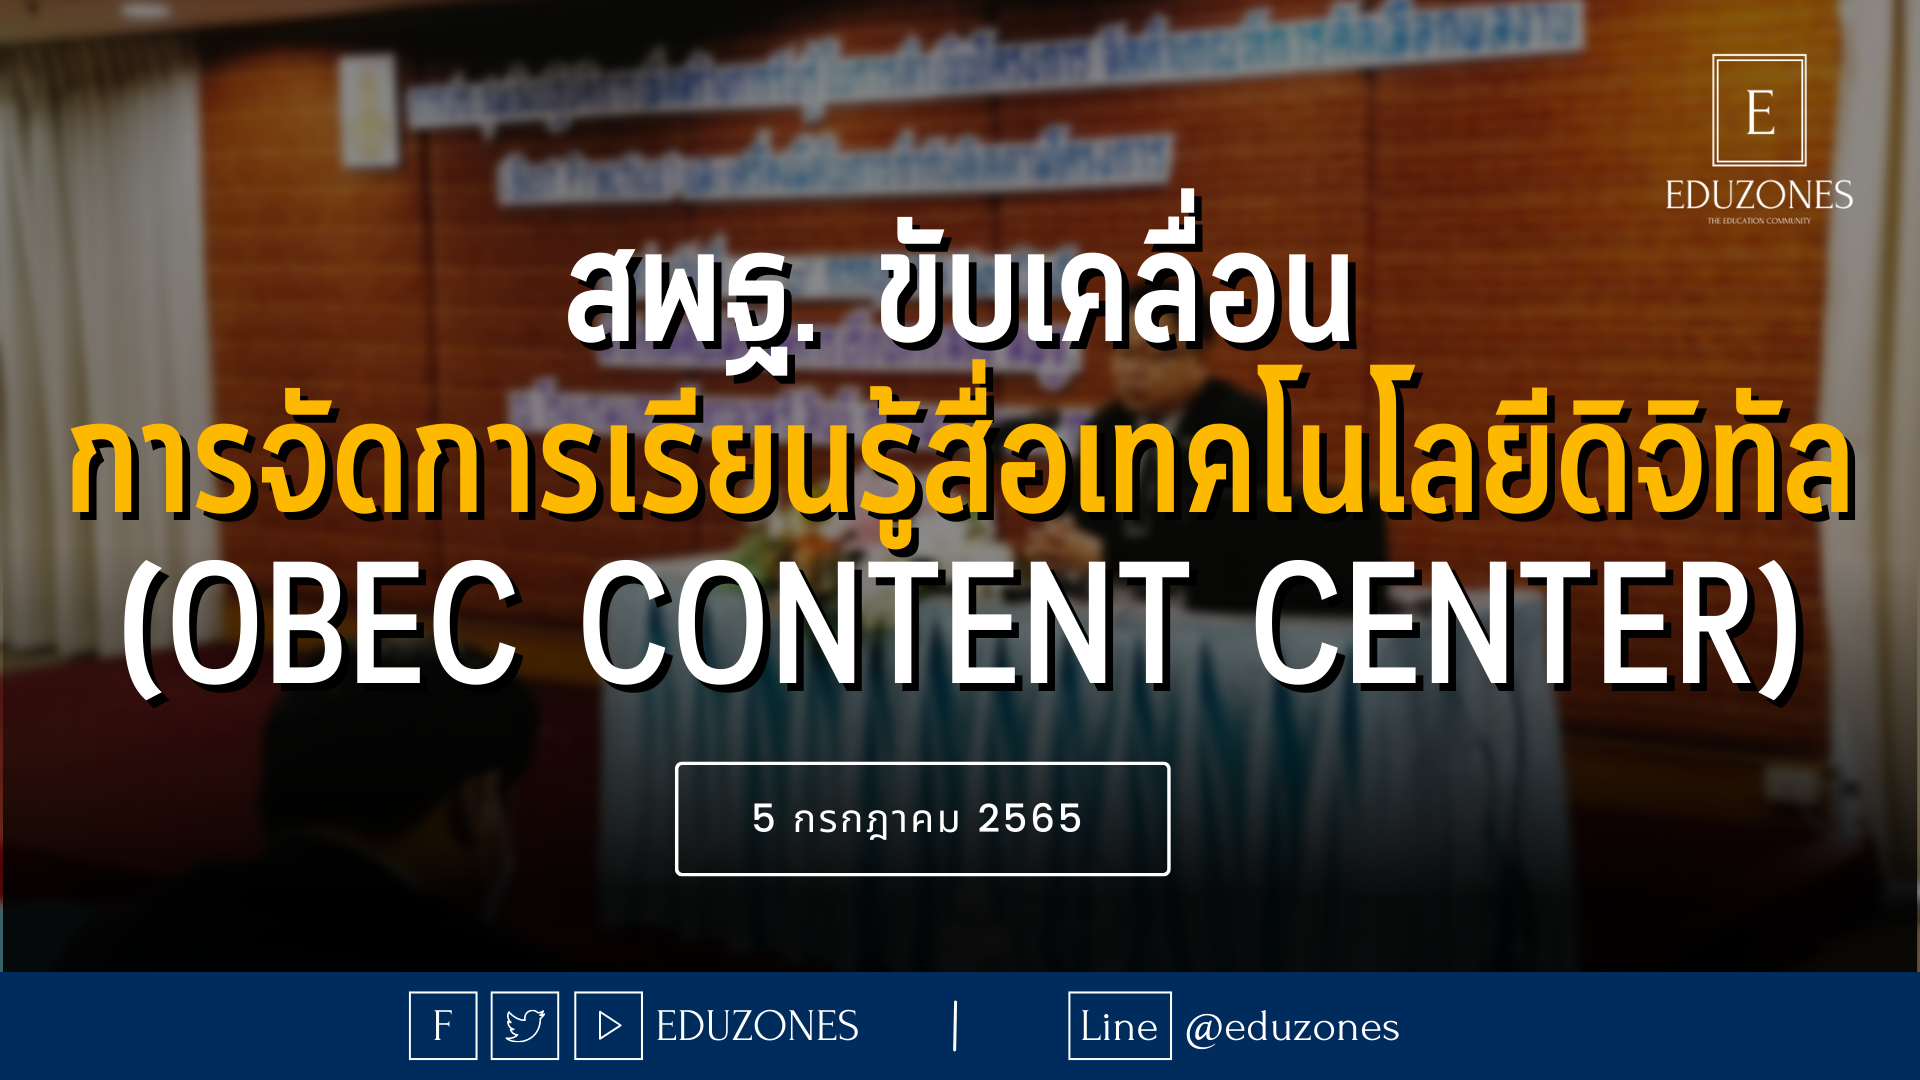 สพฐ. ดำเนินโครงการขับเคลื่อนการจัดการเรียนรู้ด้วยสื่อเทคโนโลยีดิจิทัล ระดับการศึกษาขั้นพื้นฐาน (OBEC Content Center) - 5 กรกฎาคม 2565